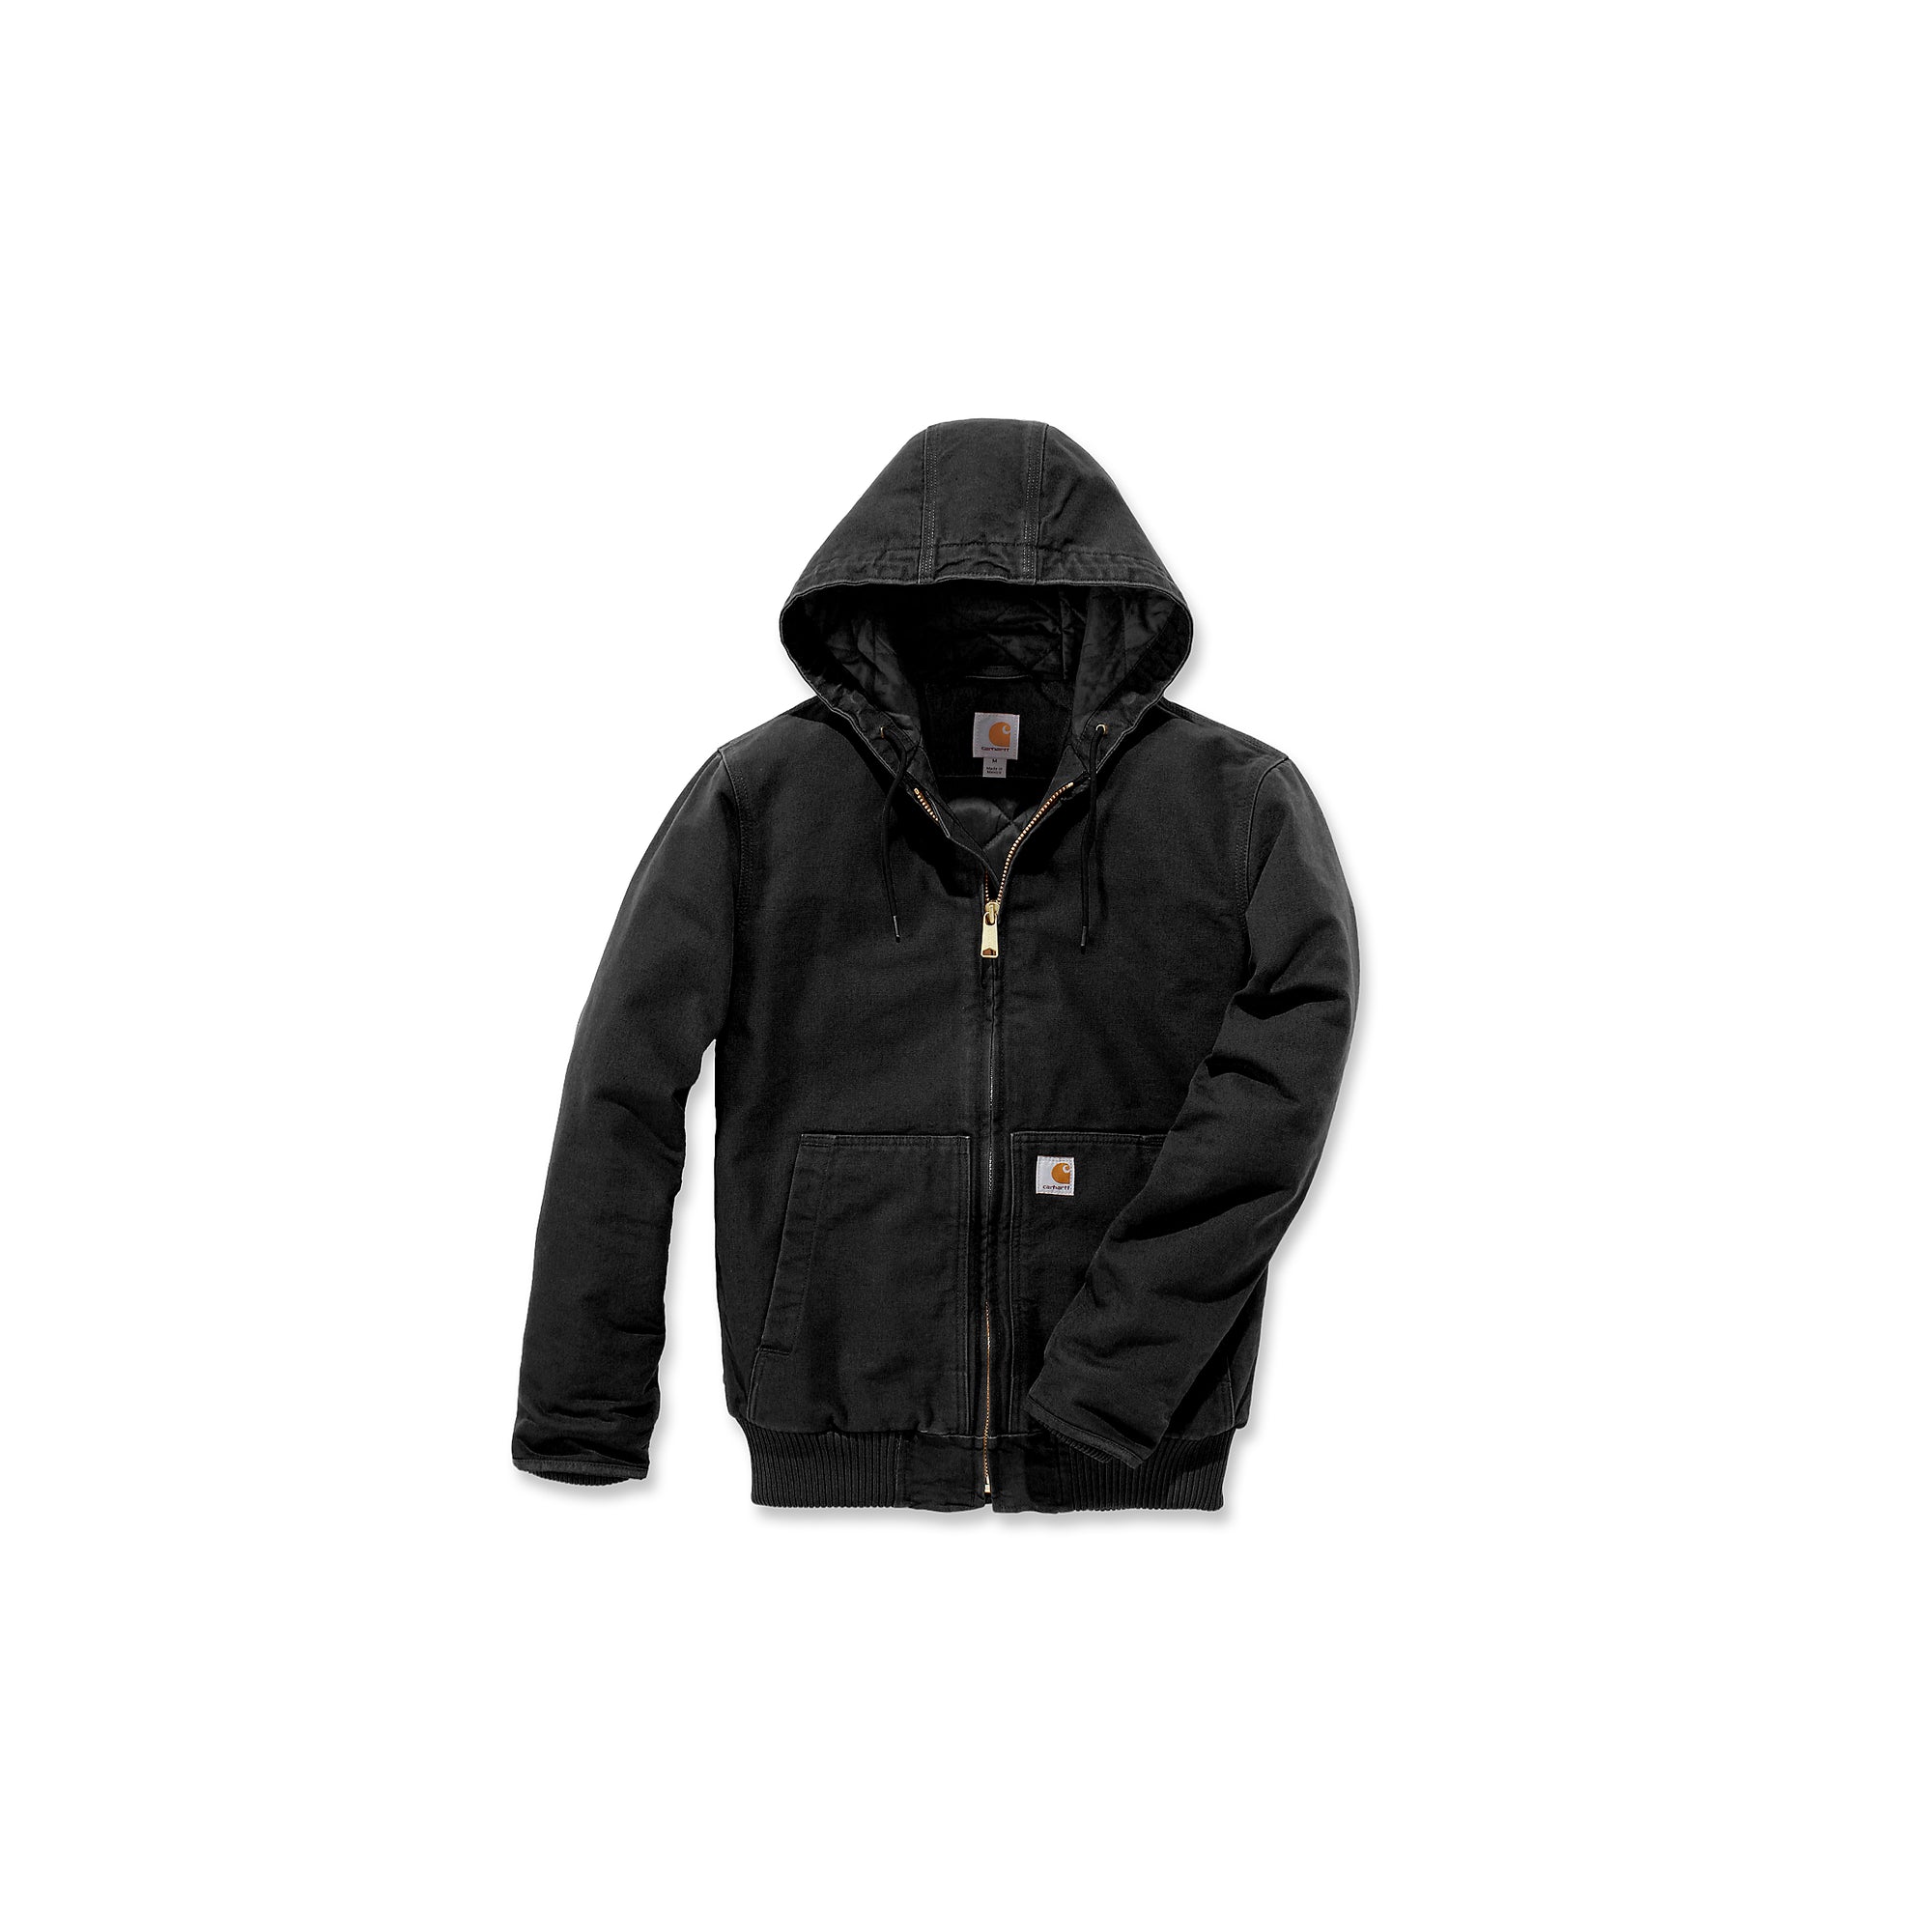 Carhartt Active Jacket miesten takki, musta